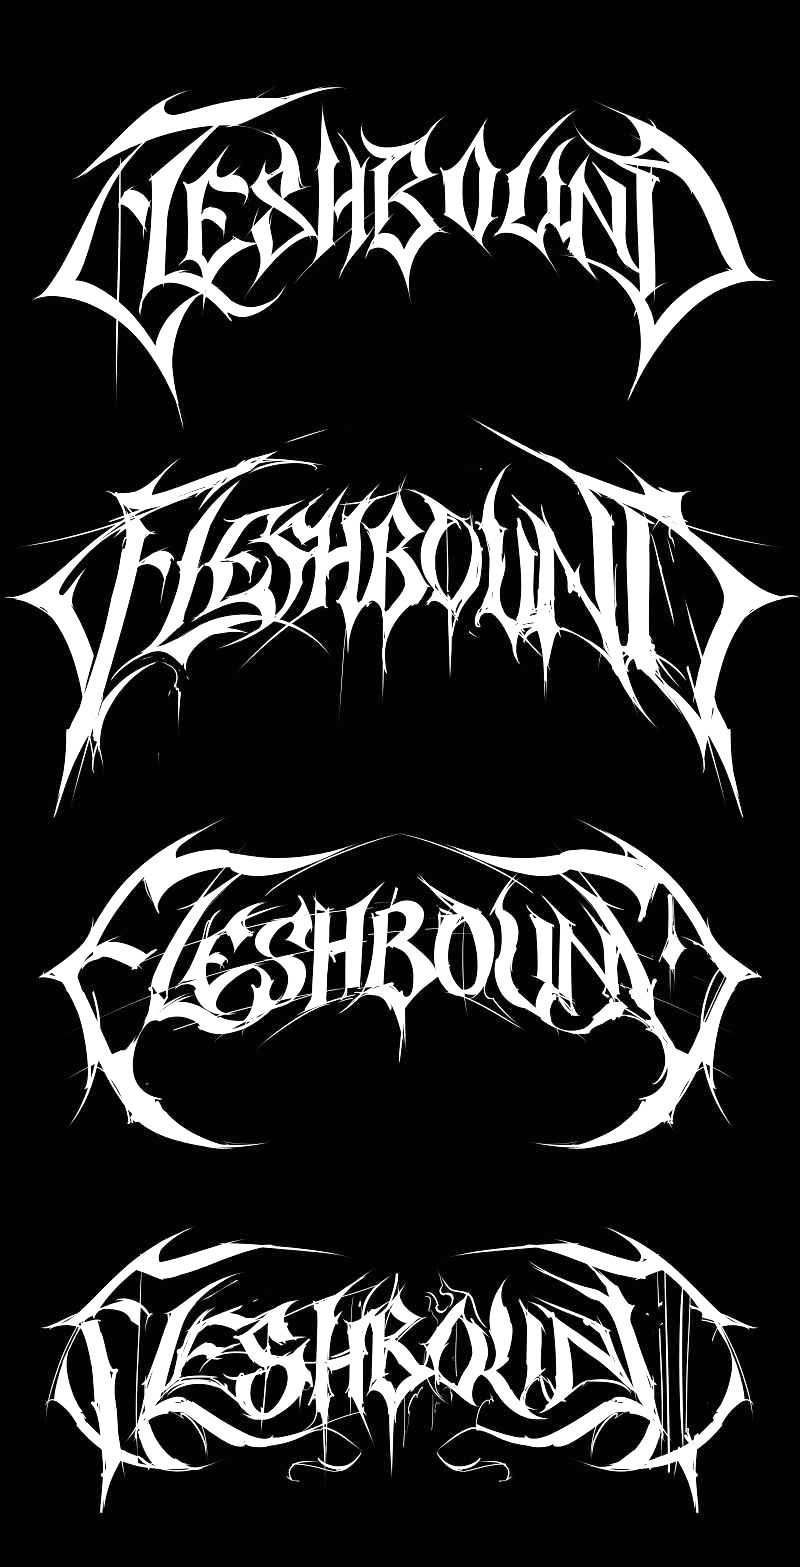 Fleshbound